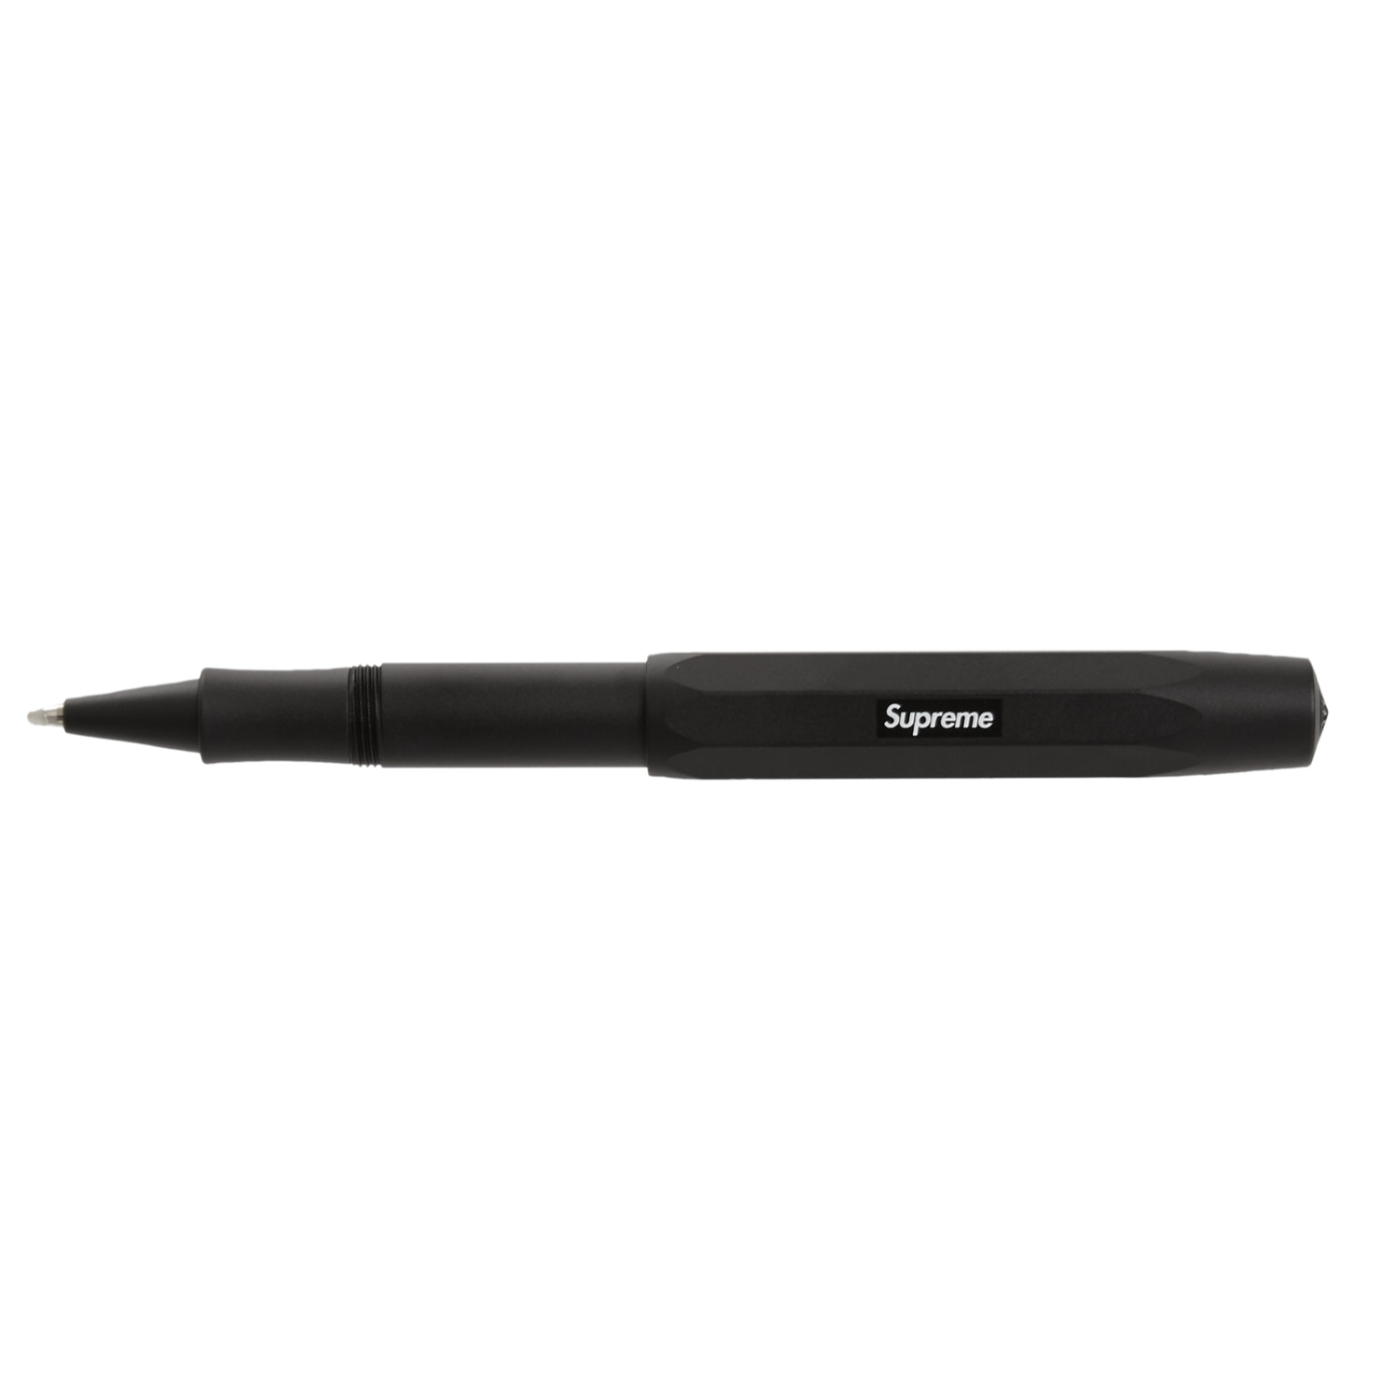 Supreme x Kaweco AL Sport Ballpoint Pen - Black